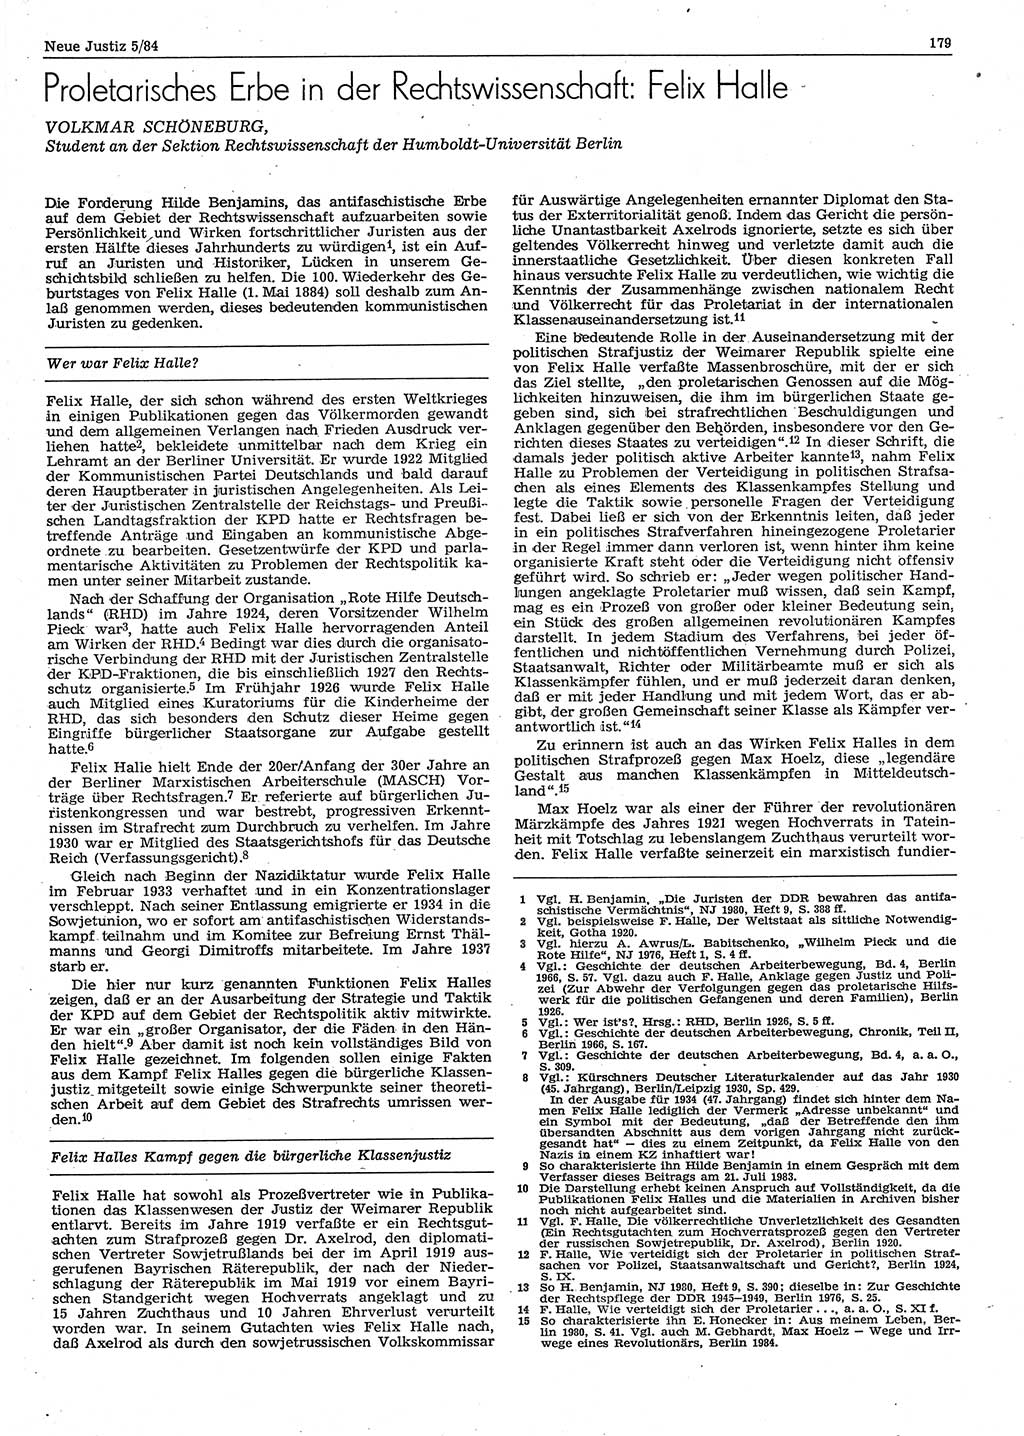 Neue Justiz (NJ), Zeitschrift für sozialistisches Recht und Gesetzlichkeit [Deutsche Demokratische Republik (DDR)], 38. Jahrgang 1984, Seite 179 (NJ DDR 1984, S. 179)